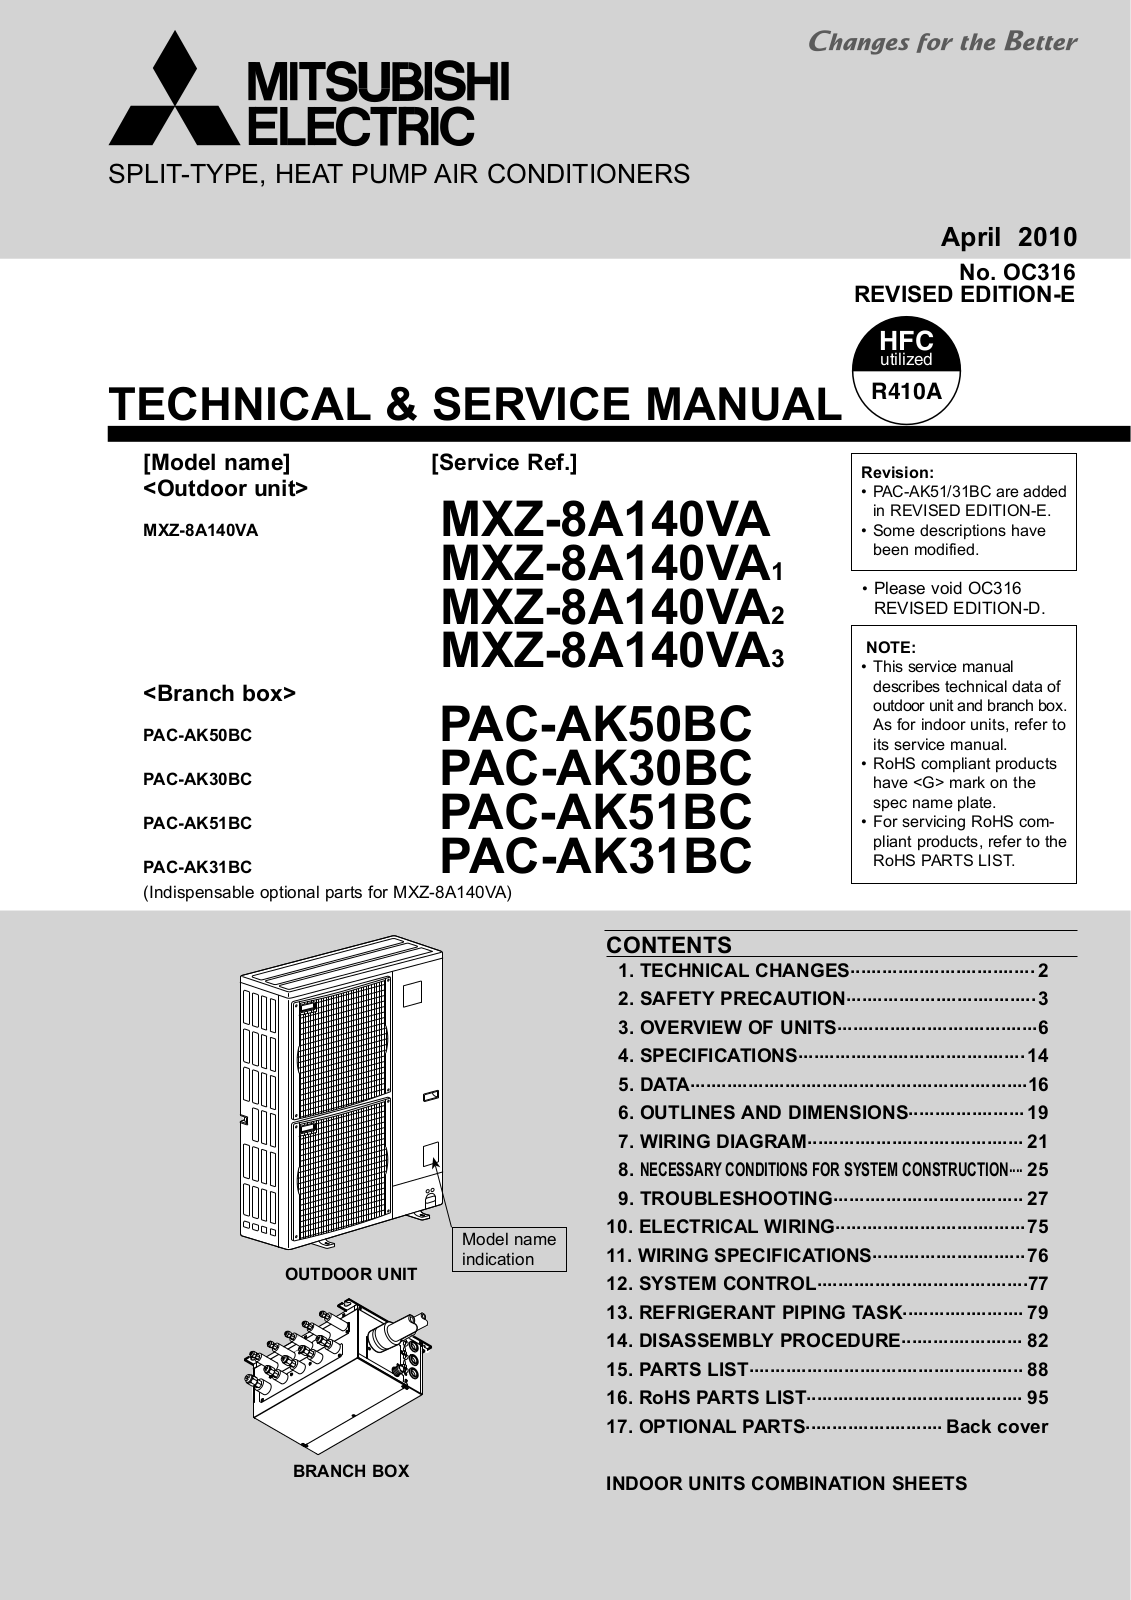 Mitsubishi MXZ-8A140VA/VA1/VA2/VA3, PAC-AK50BC, PAC-AK30BC, PAC-AK51BC, PAC-AK31BC Service Manual